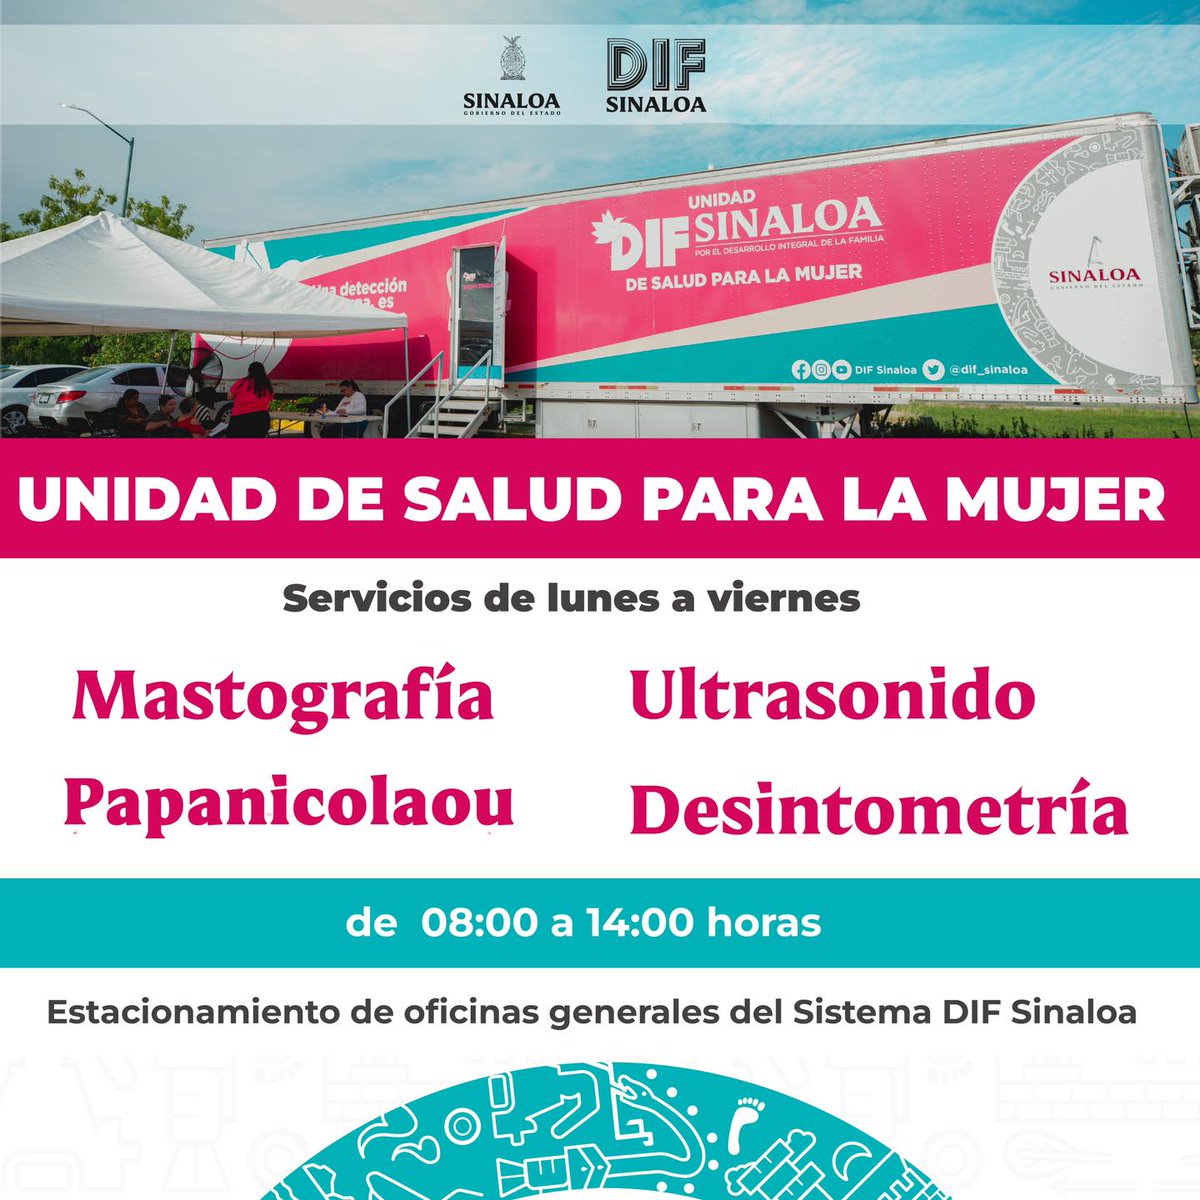 La Unidad de Salud para la Mujer te atiende de lunes a viernes en horario de 08:00 a 14:00 horas en el estacionamiento de las oficinas del Sistema DIF Sinaloa.